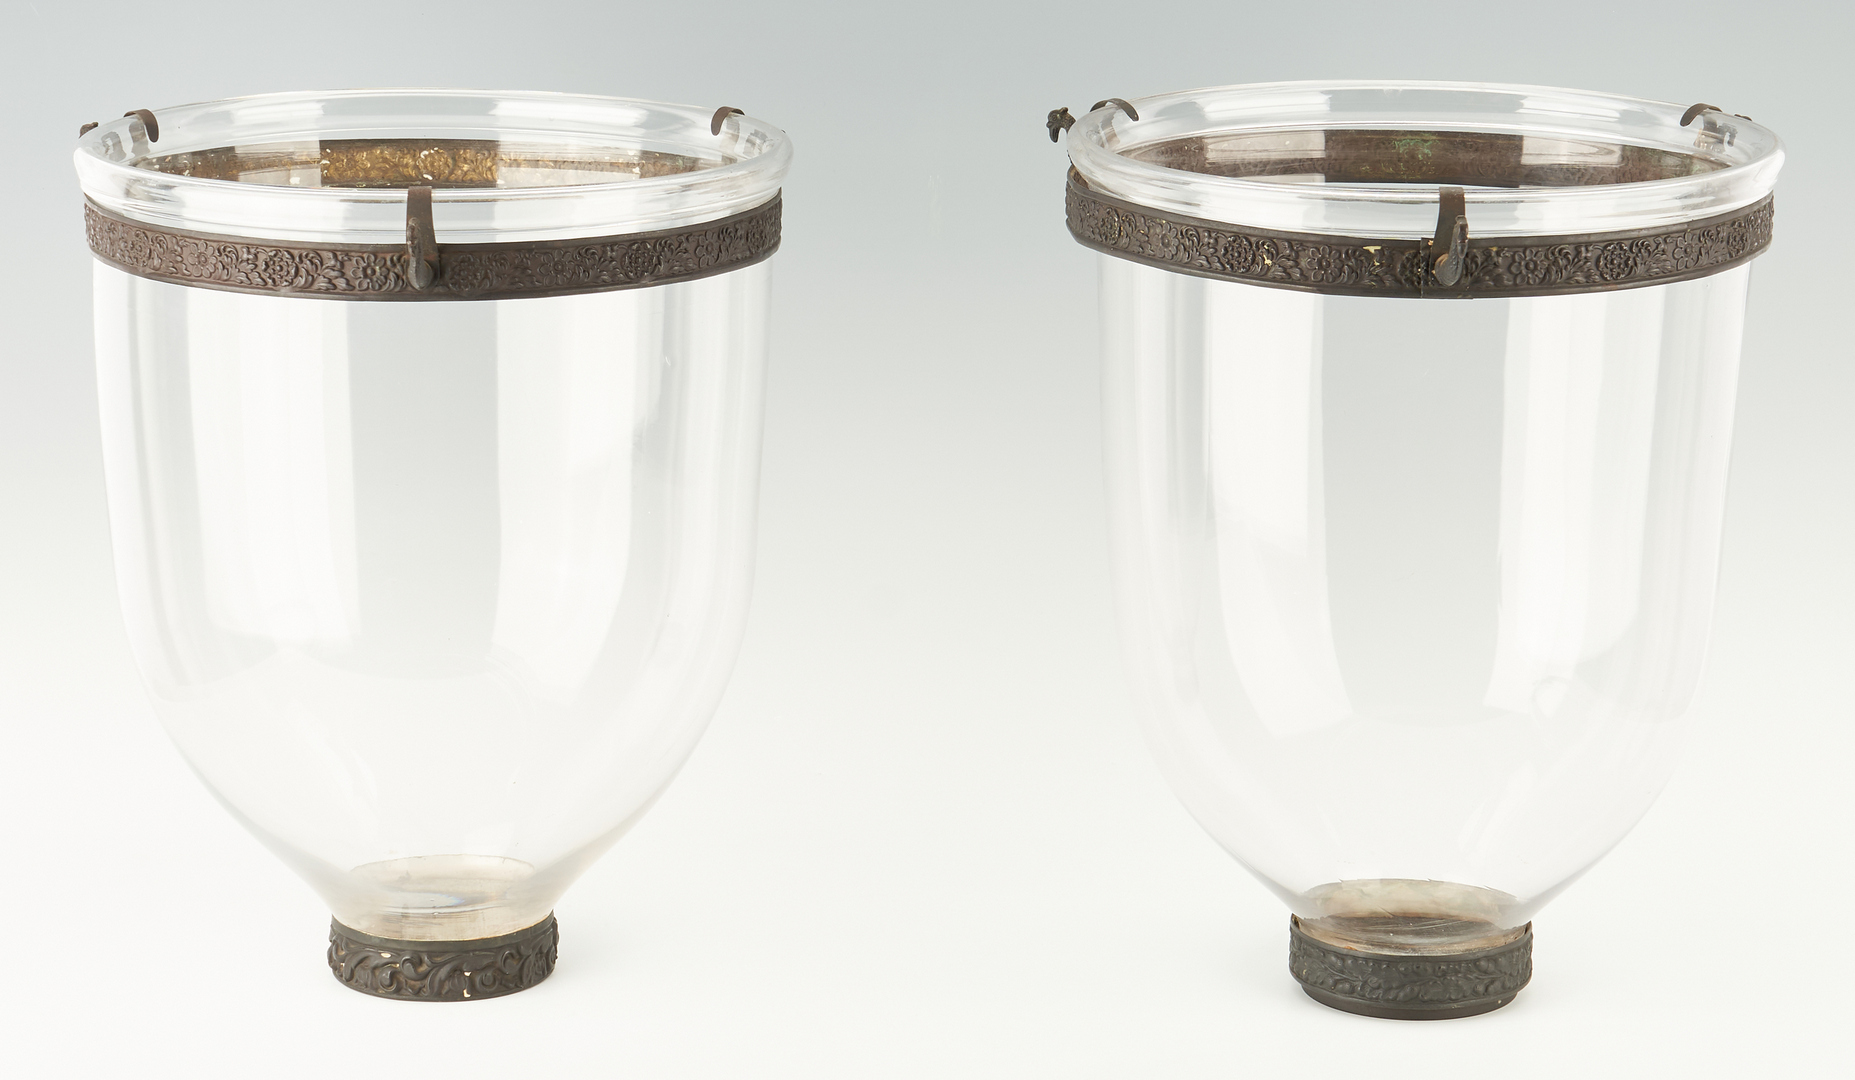 Lot 1113: 2 Bell Jar Lantern Chandeliers